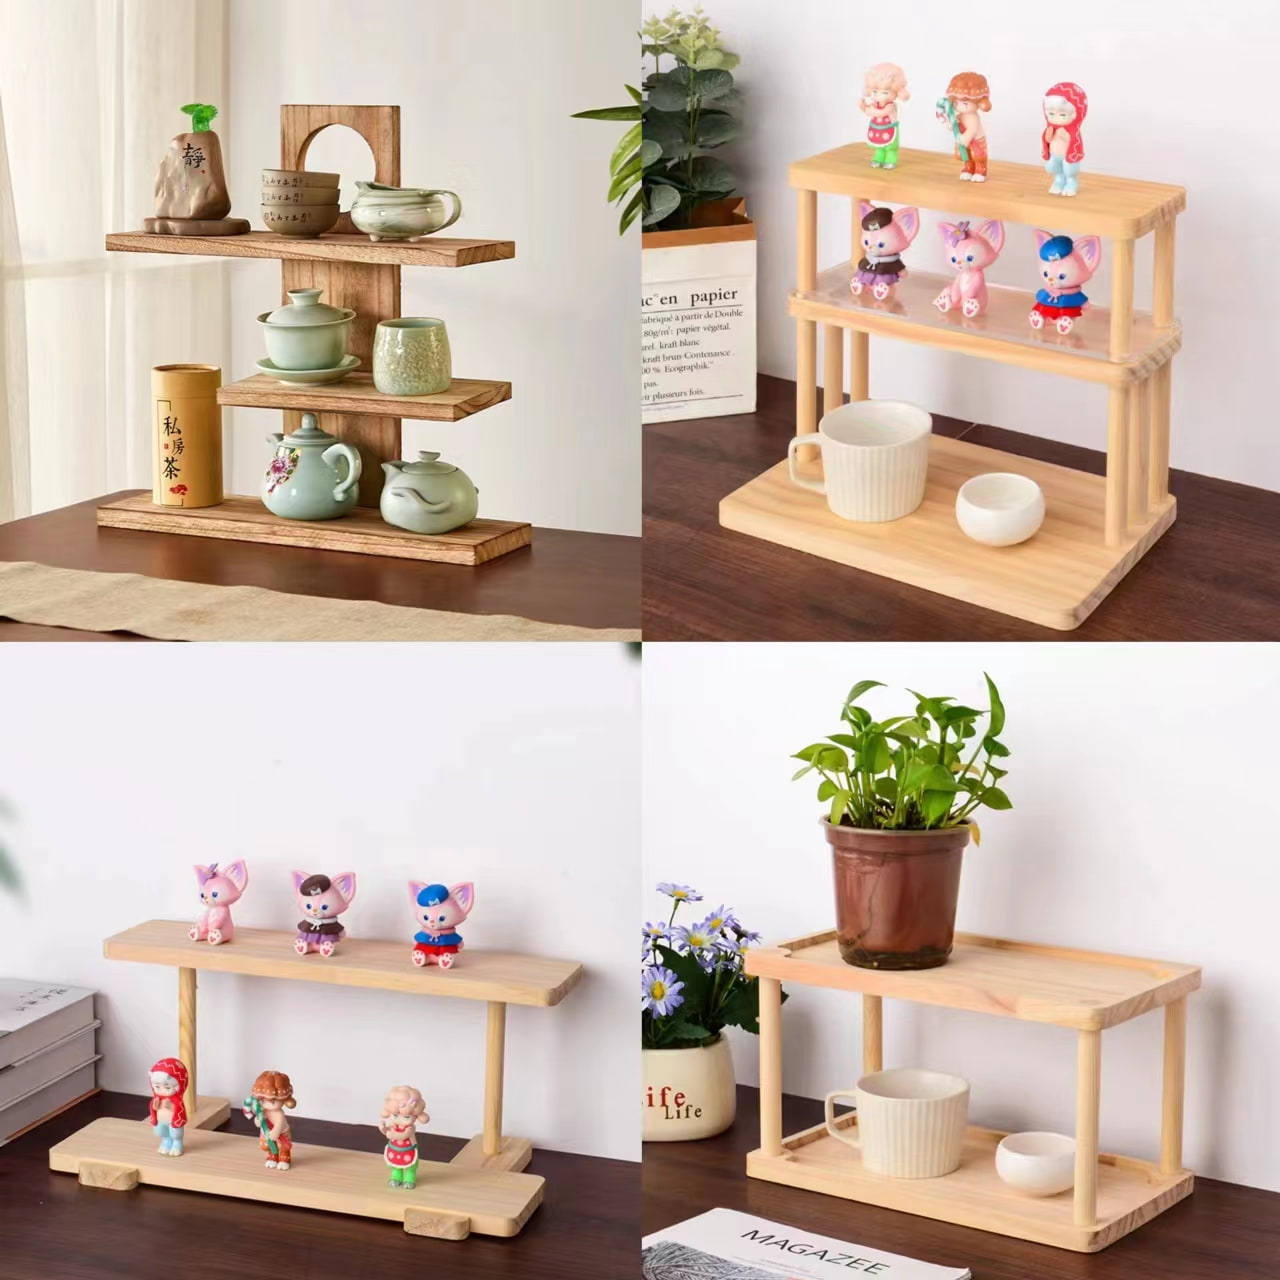 Multi-level shelves